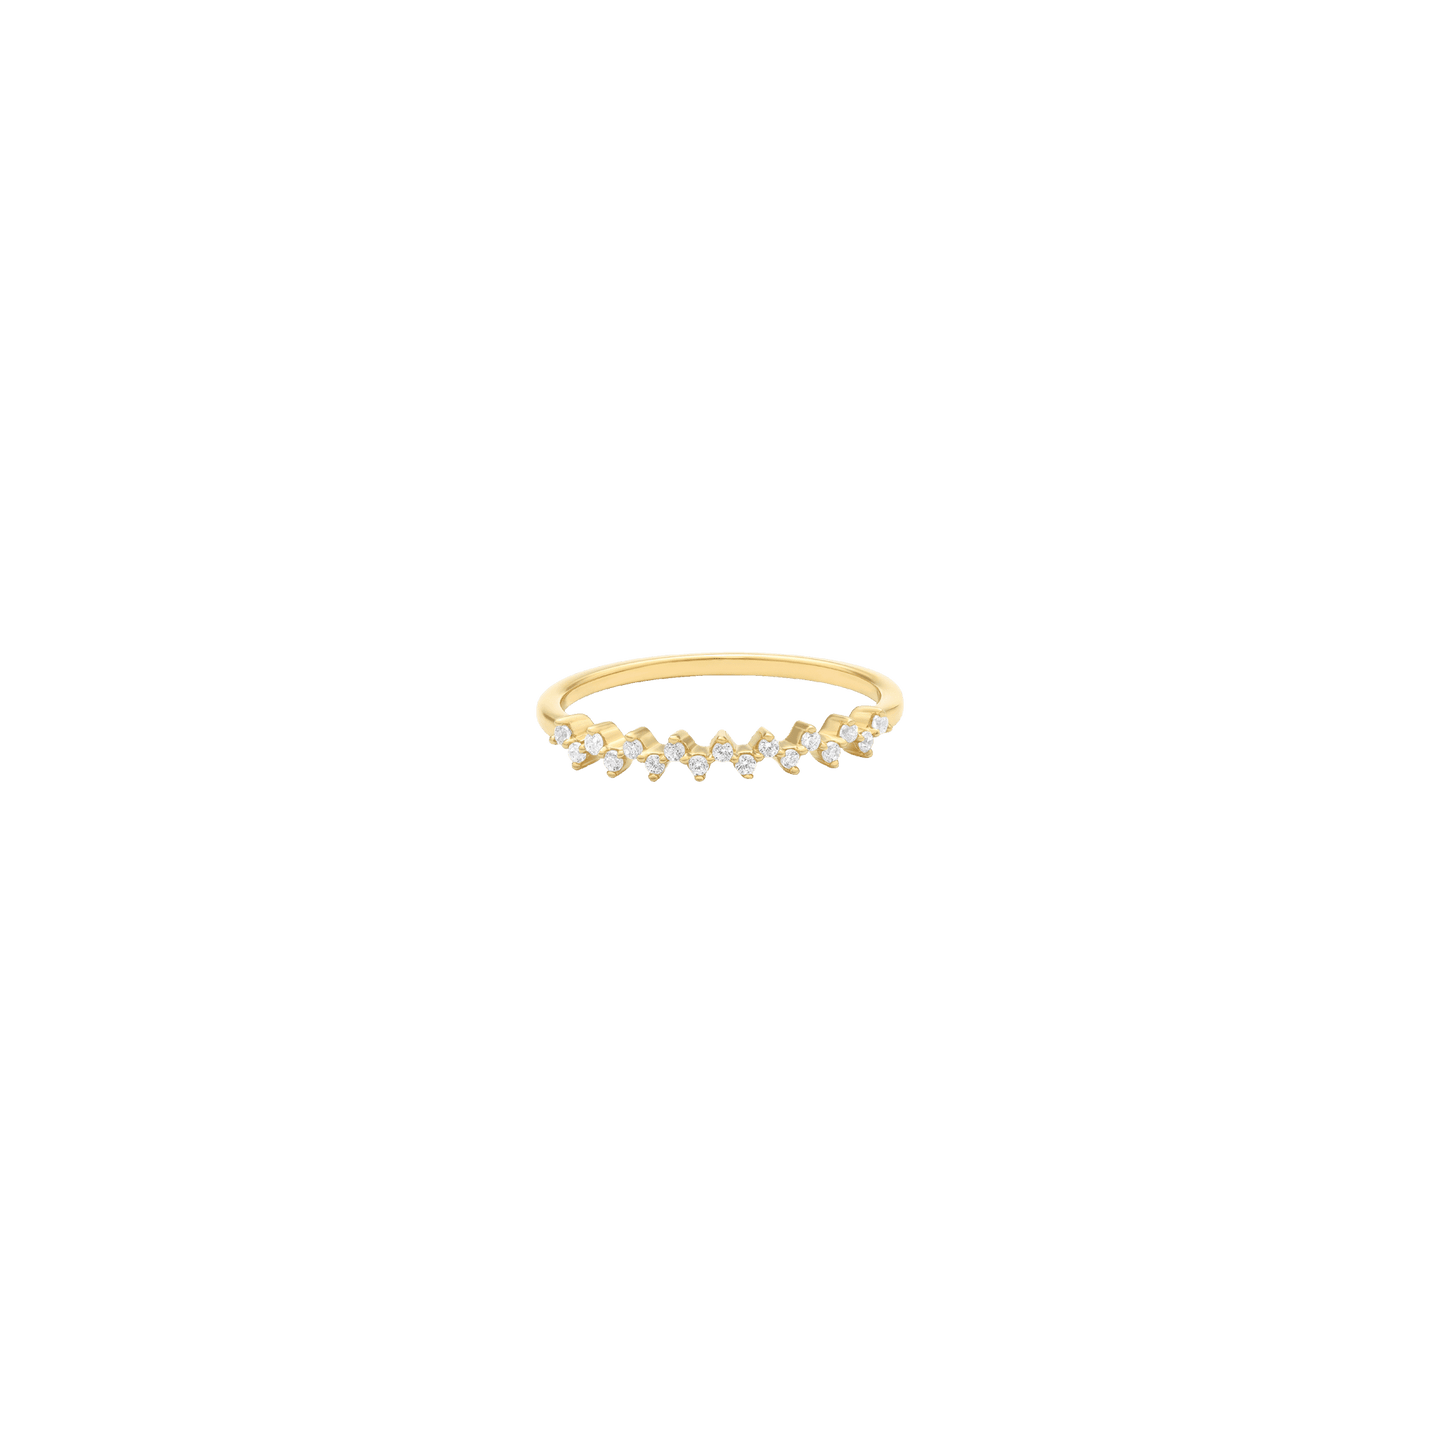 Zig Zag Diamond Ring - 14K White Gold Rings 14K Solid Gold 